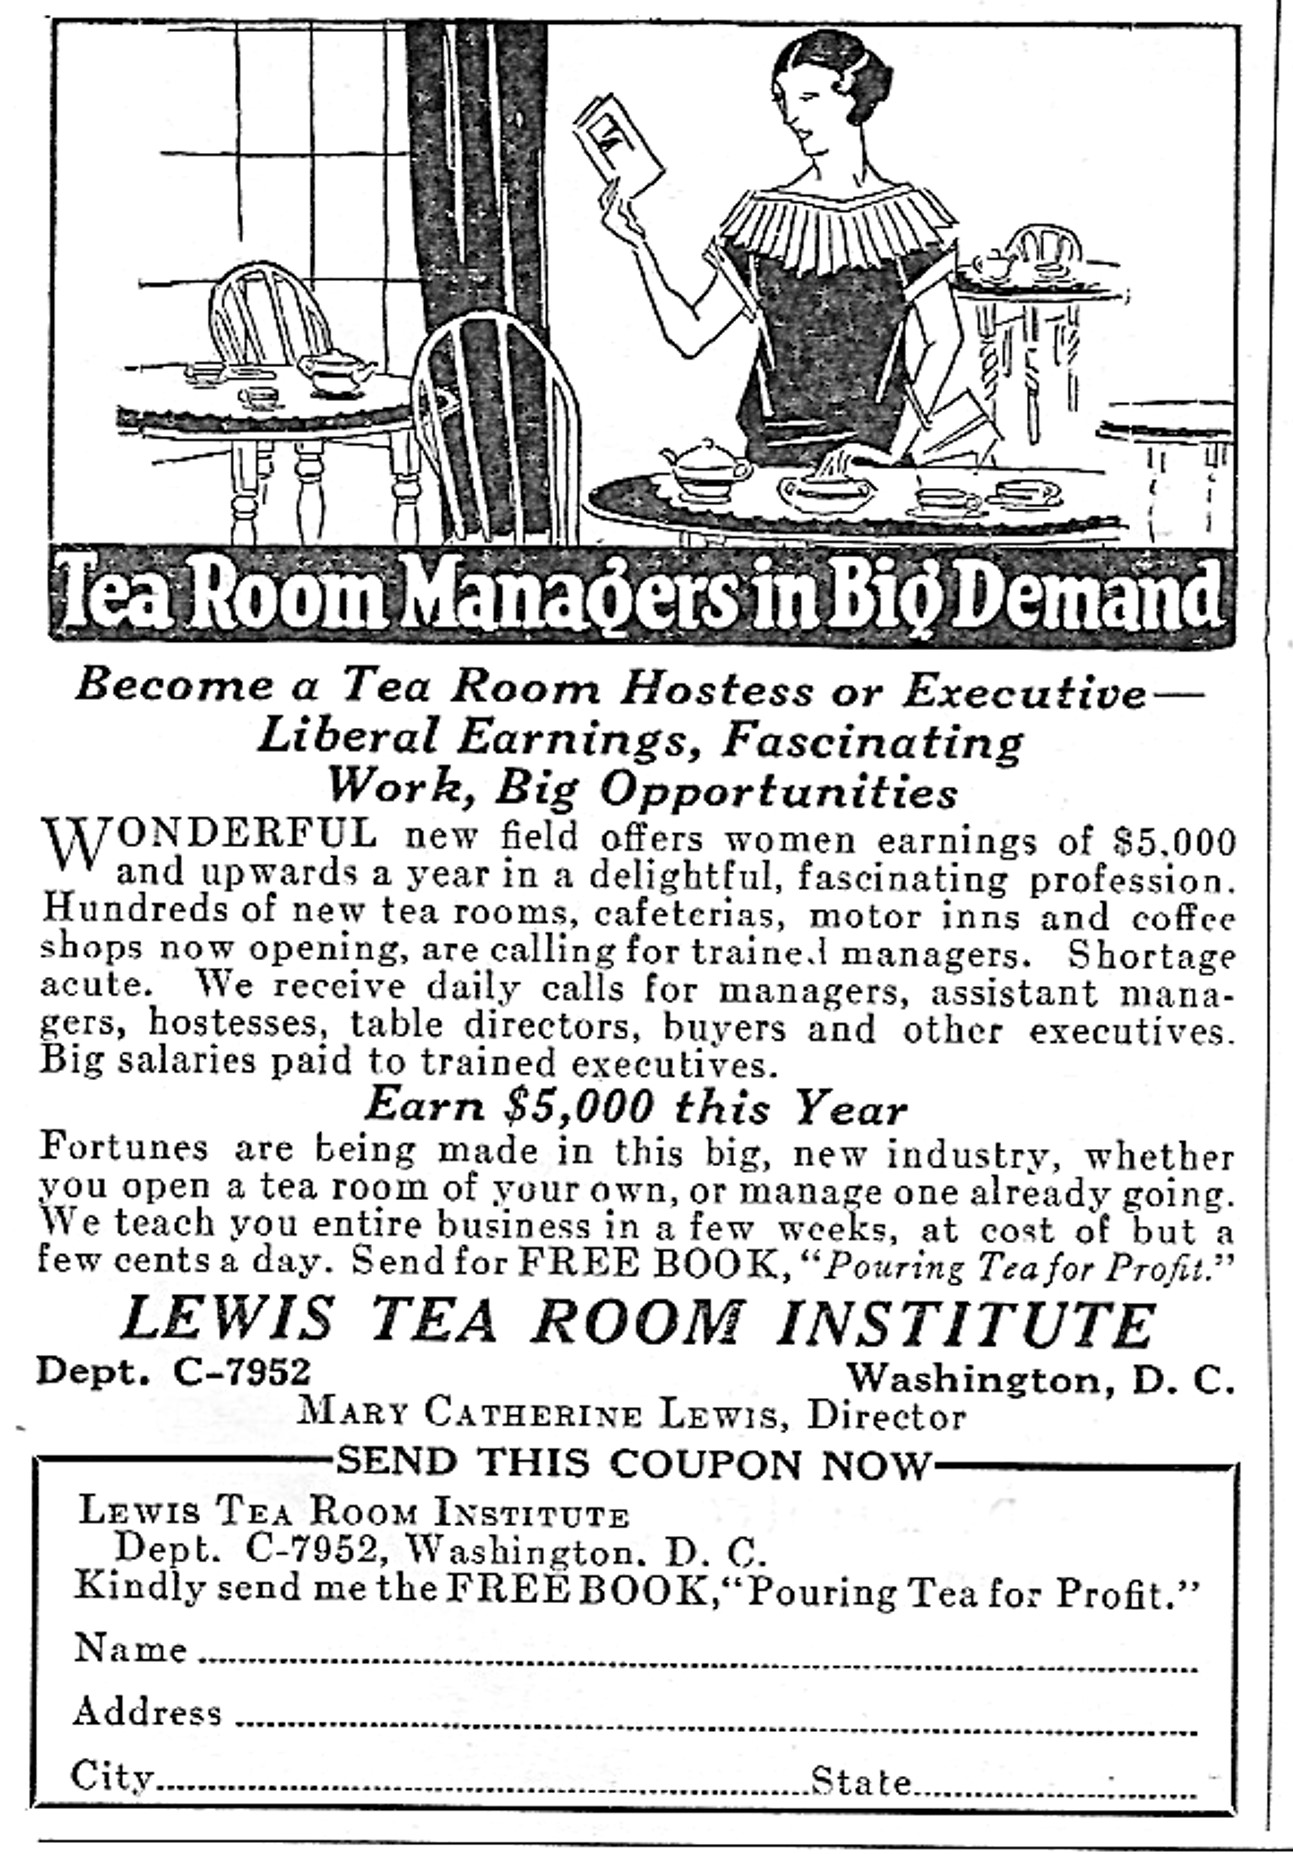 Advertisement for Lewis Tea Room Institute